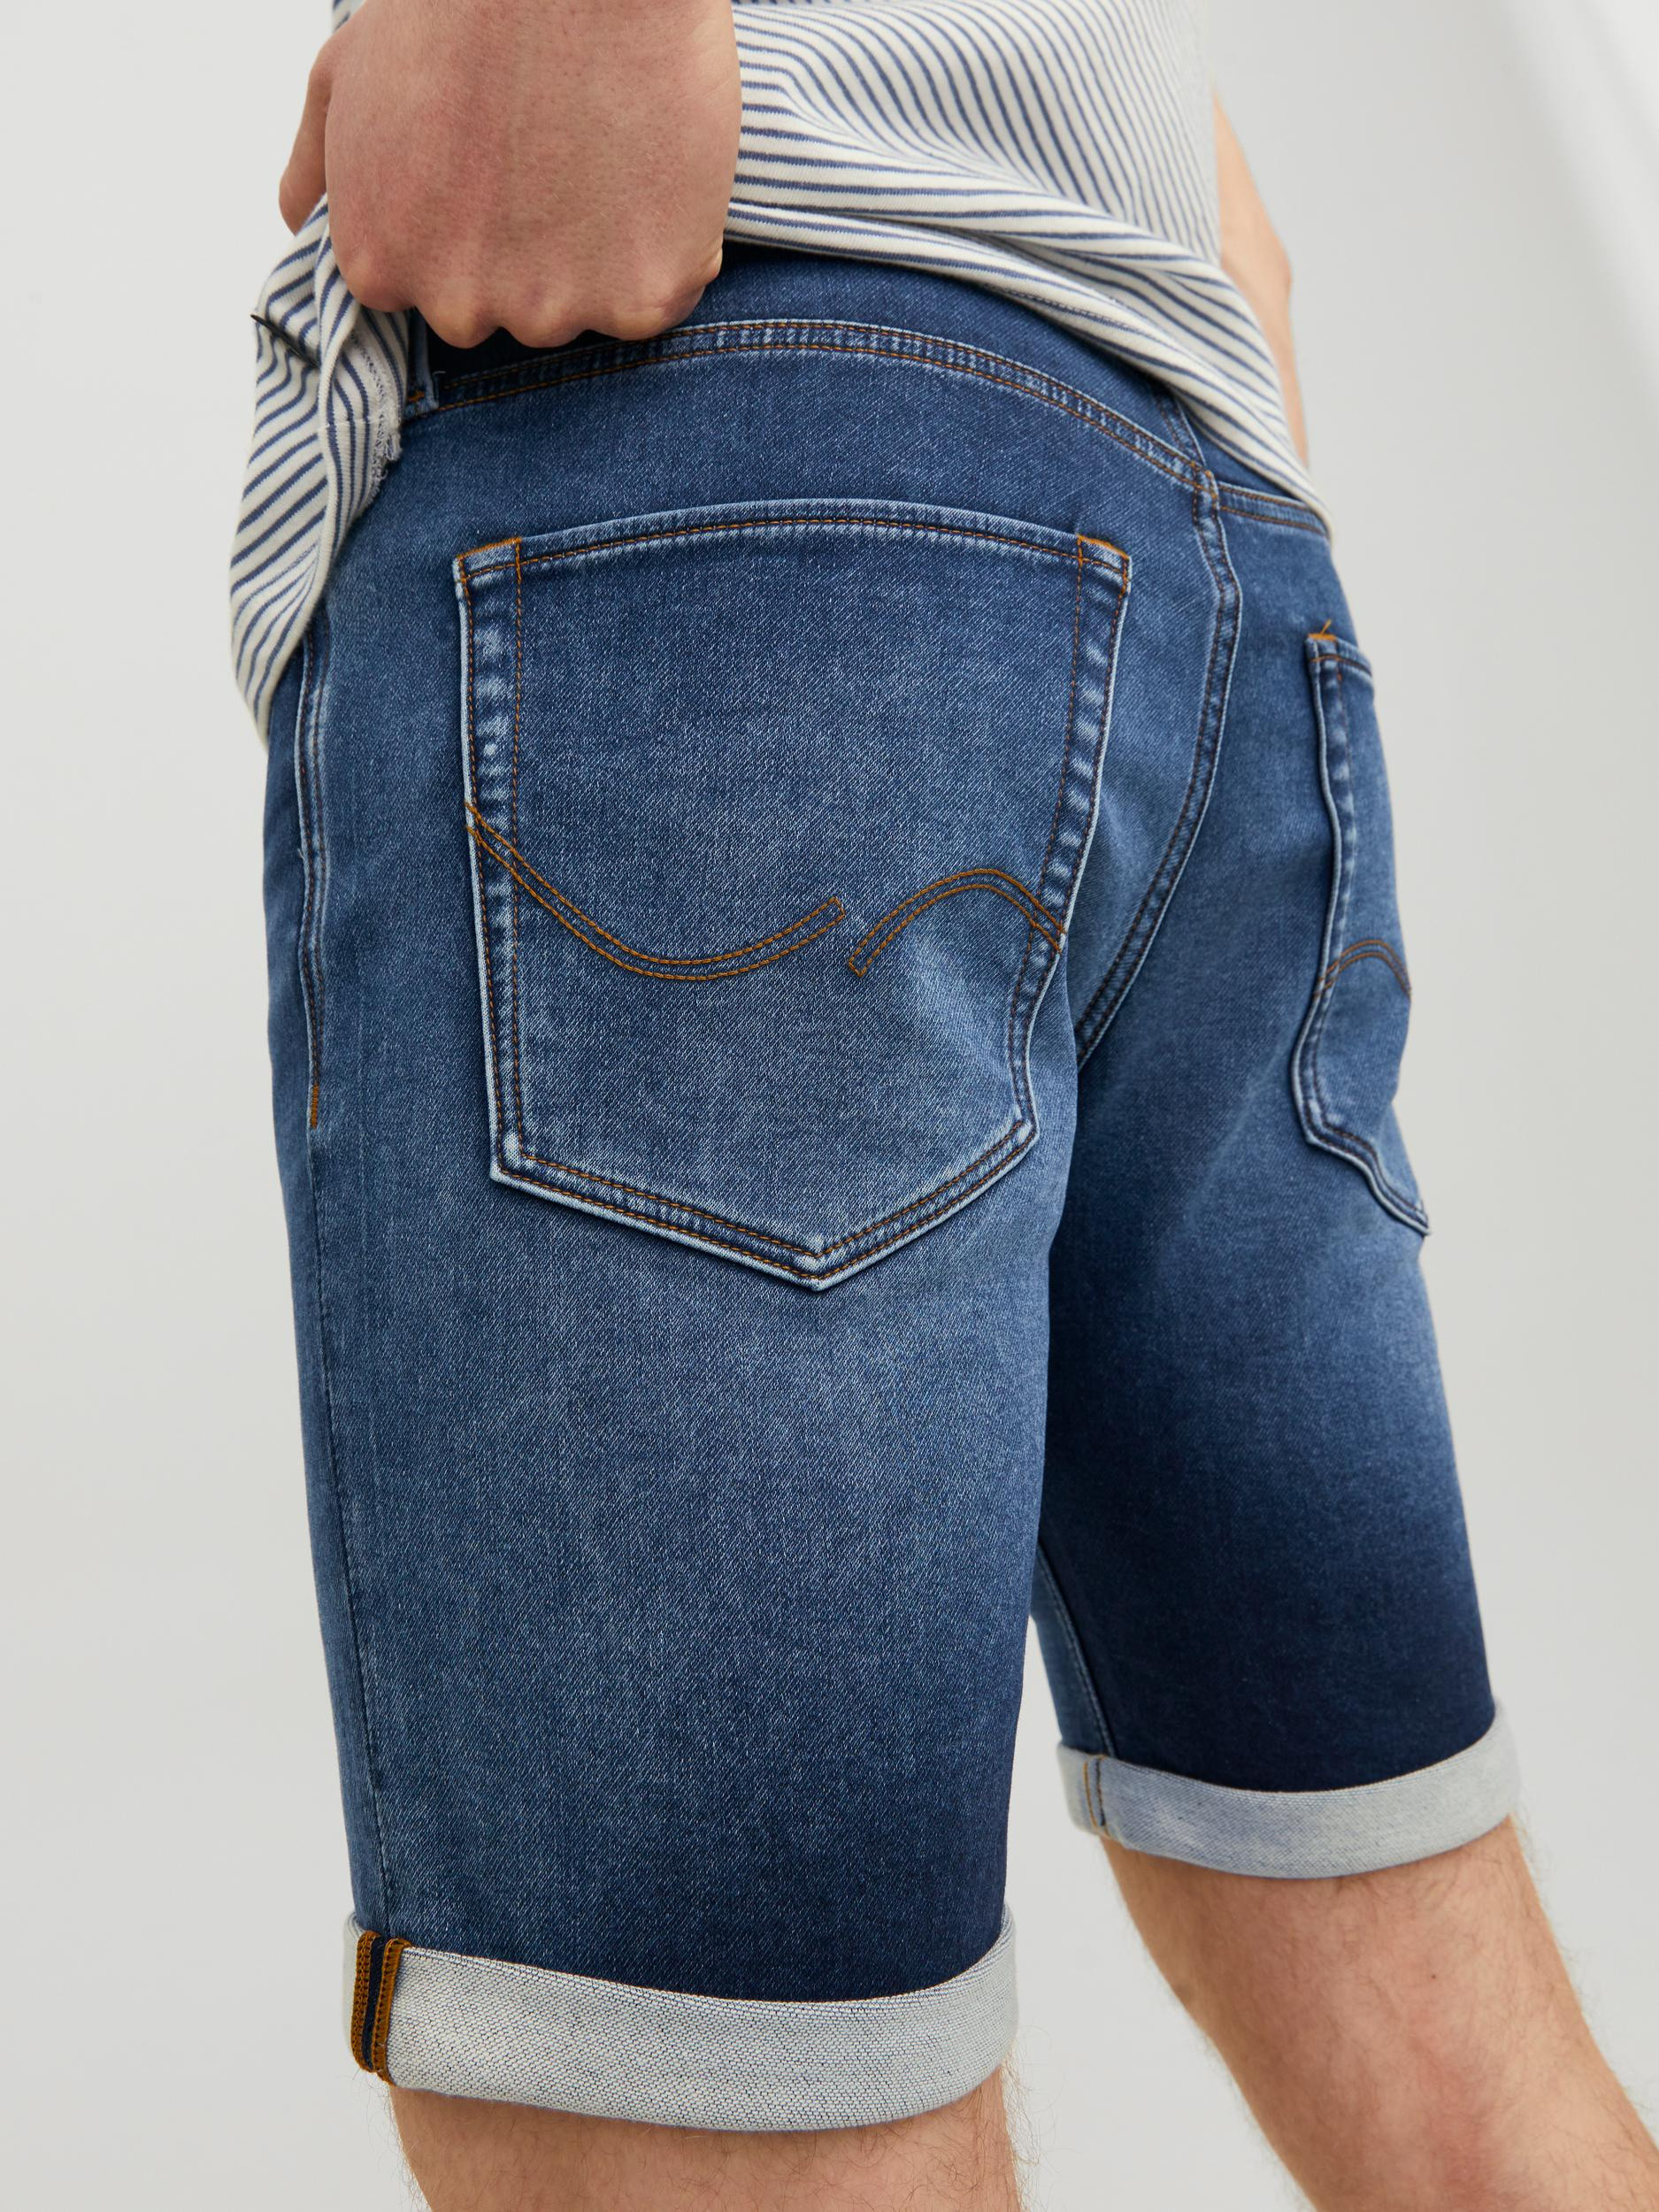 Jack & Jones - Five-pocket jeans bermuda, Denim, large image number 3